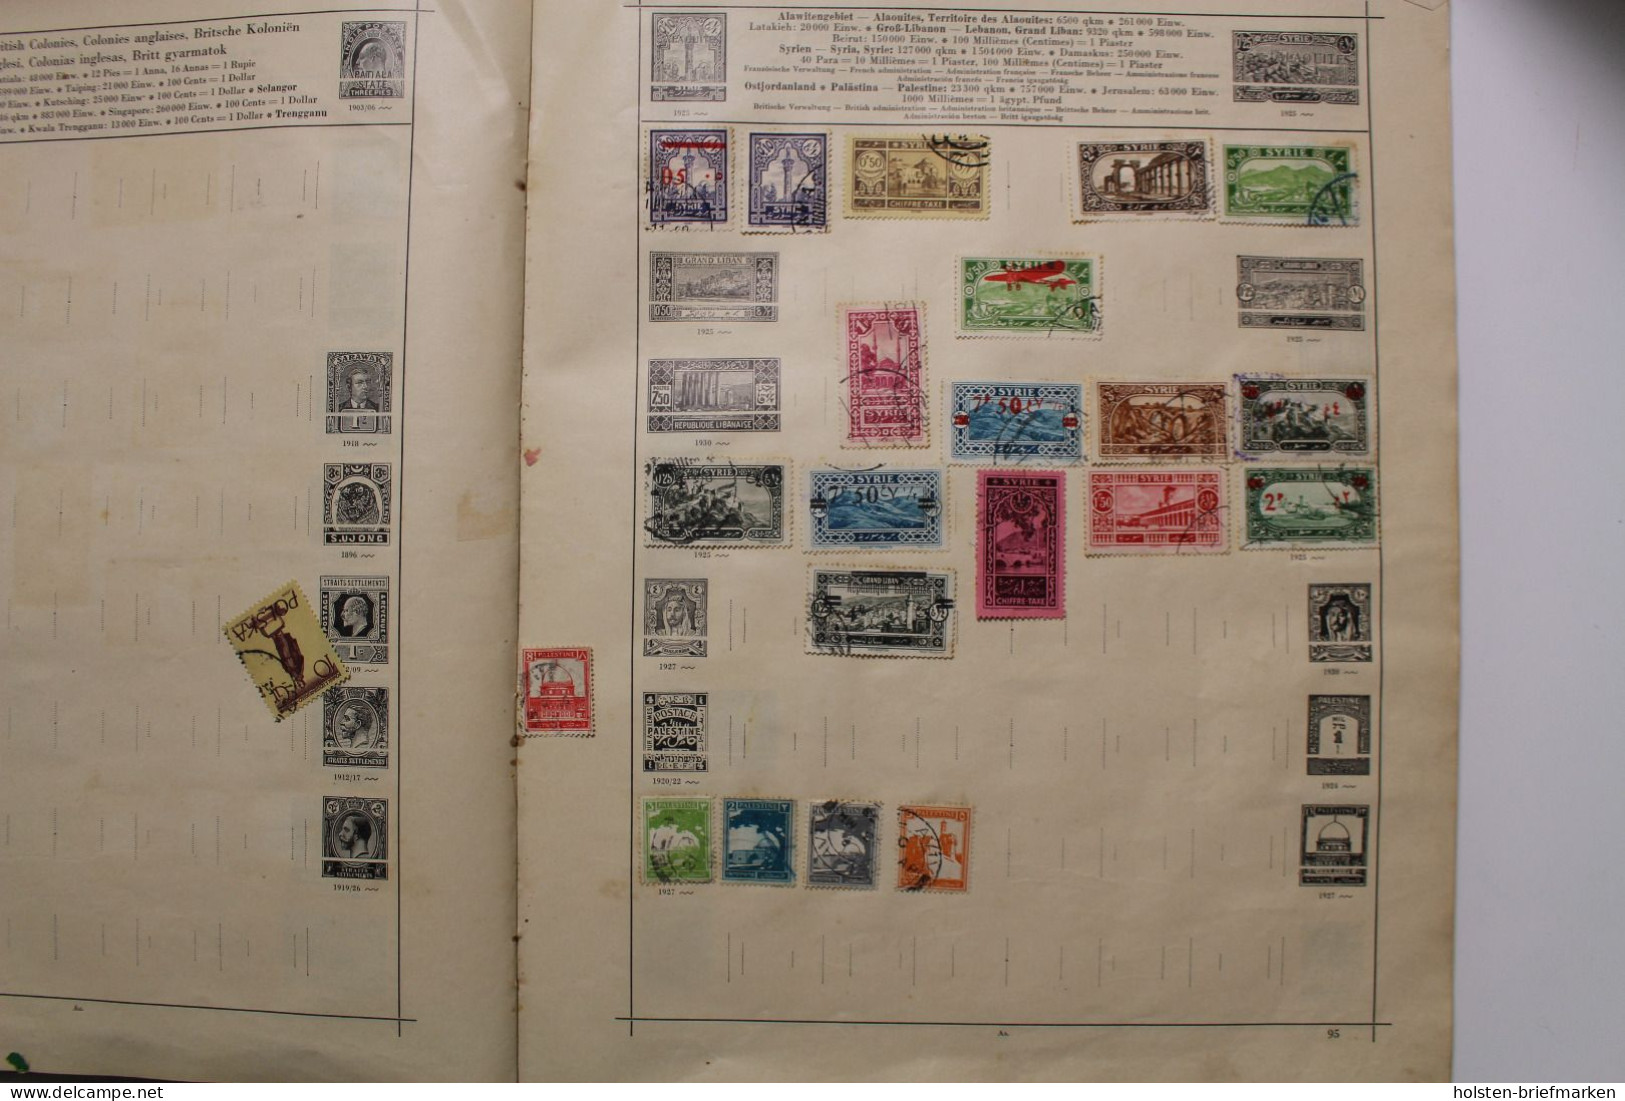 Briefmarken-Posten, viel BRD, Berlin und DDR